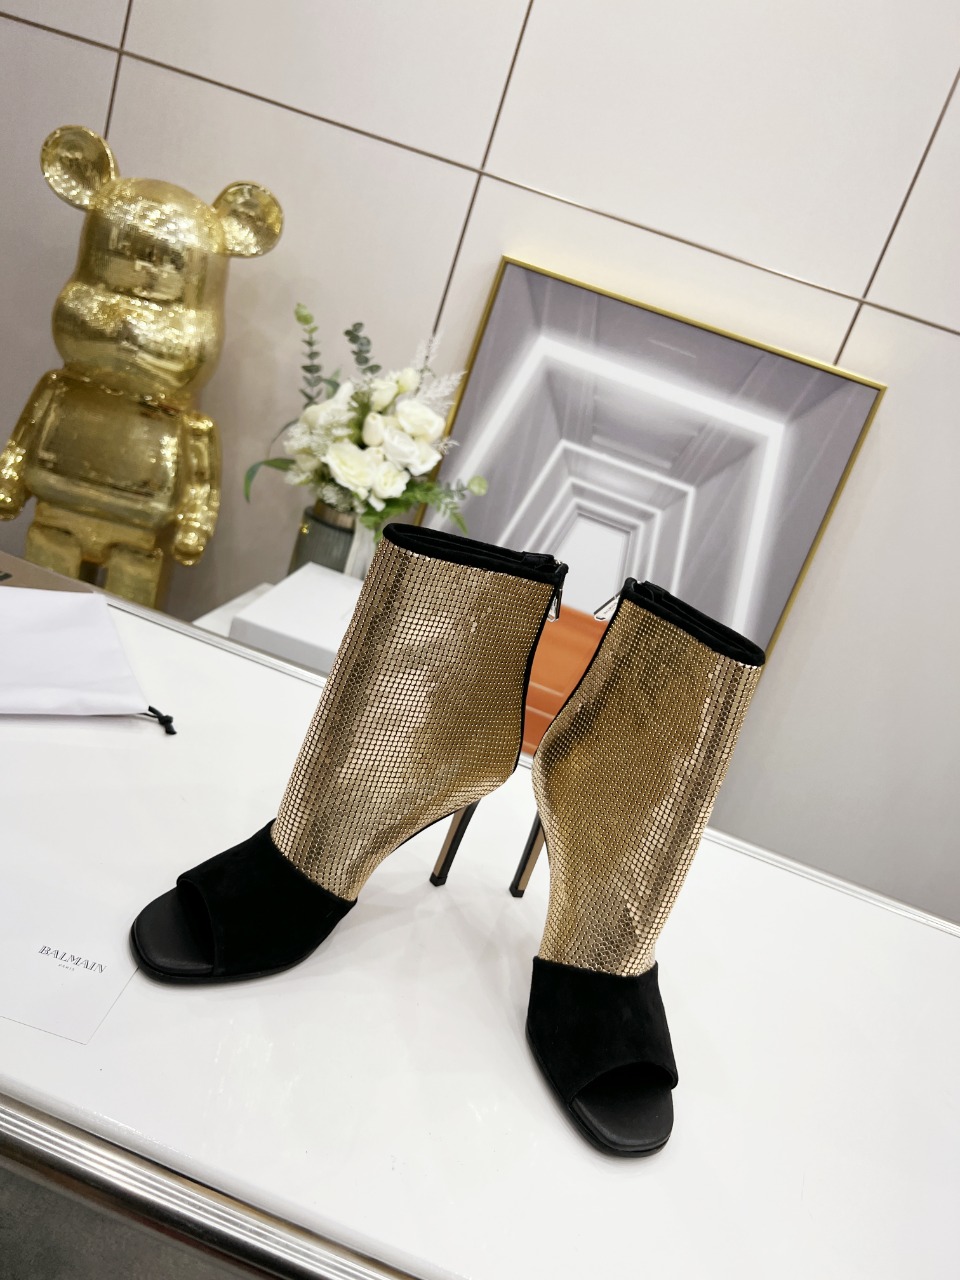 Bal*ain巴尔曼春夏最新款走秀款凉靴️法国代购原版回来历经数月全部私模打造确保所有用料材质制作工艺与